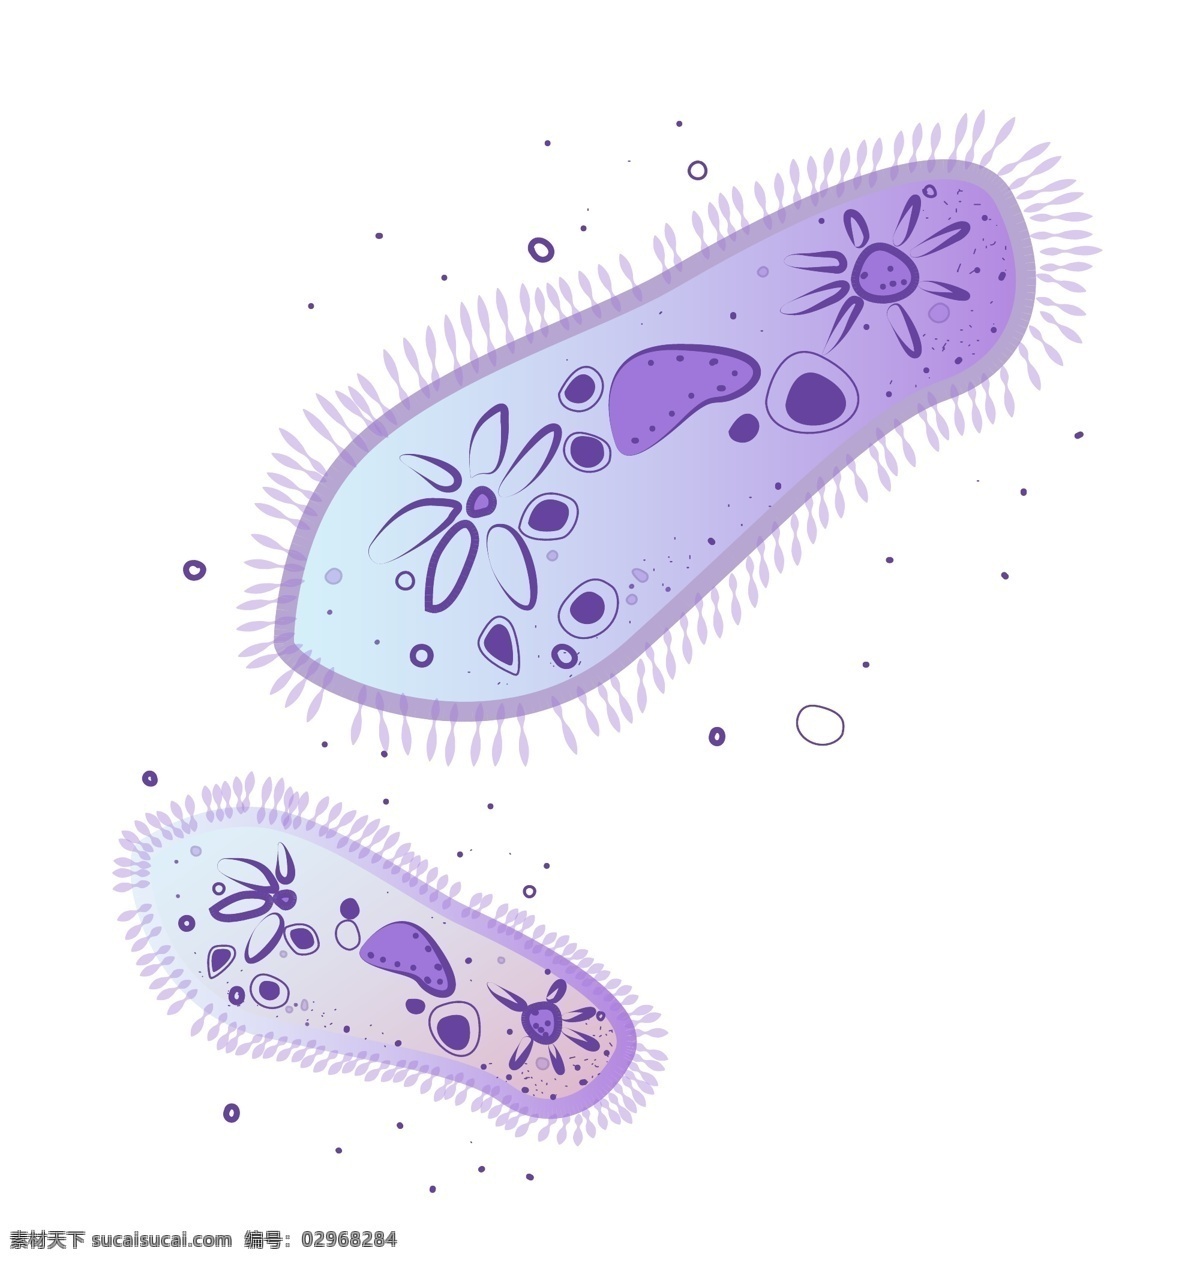 化学 细胞 反应 插图 染色体 化学细胞 生物细胞 显微镜 化学反应 实验